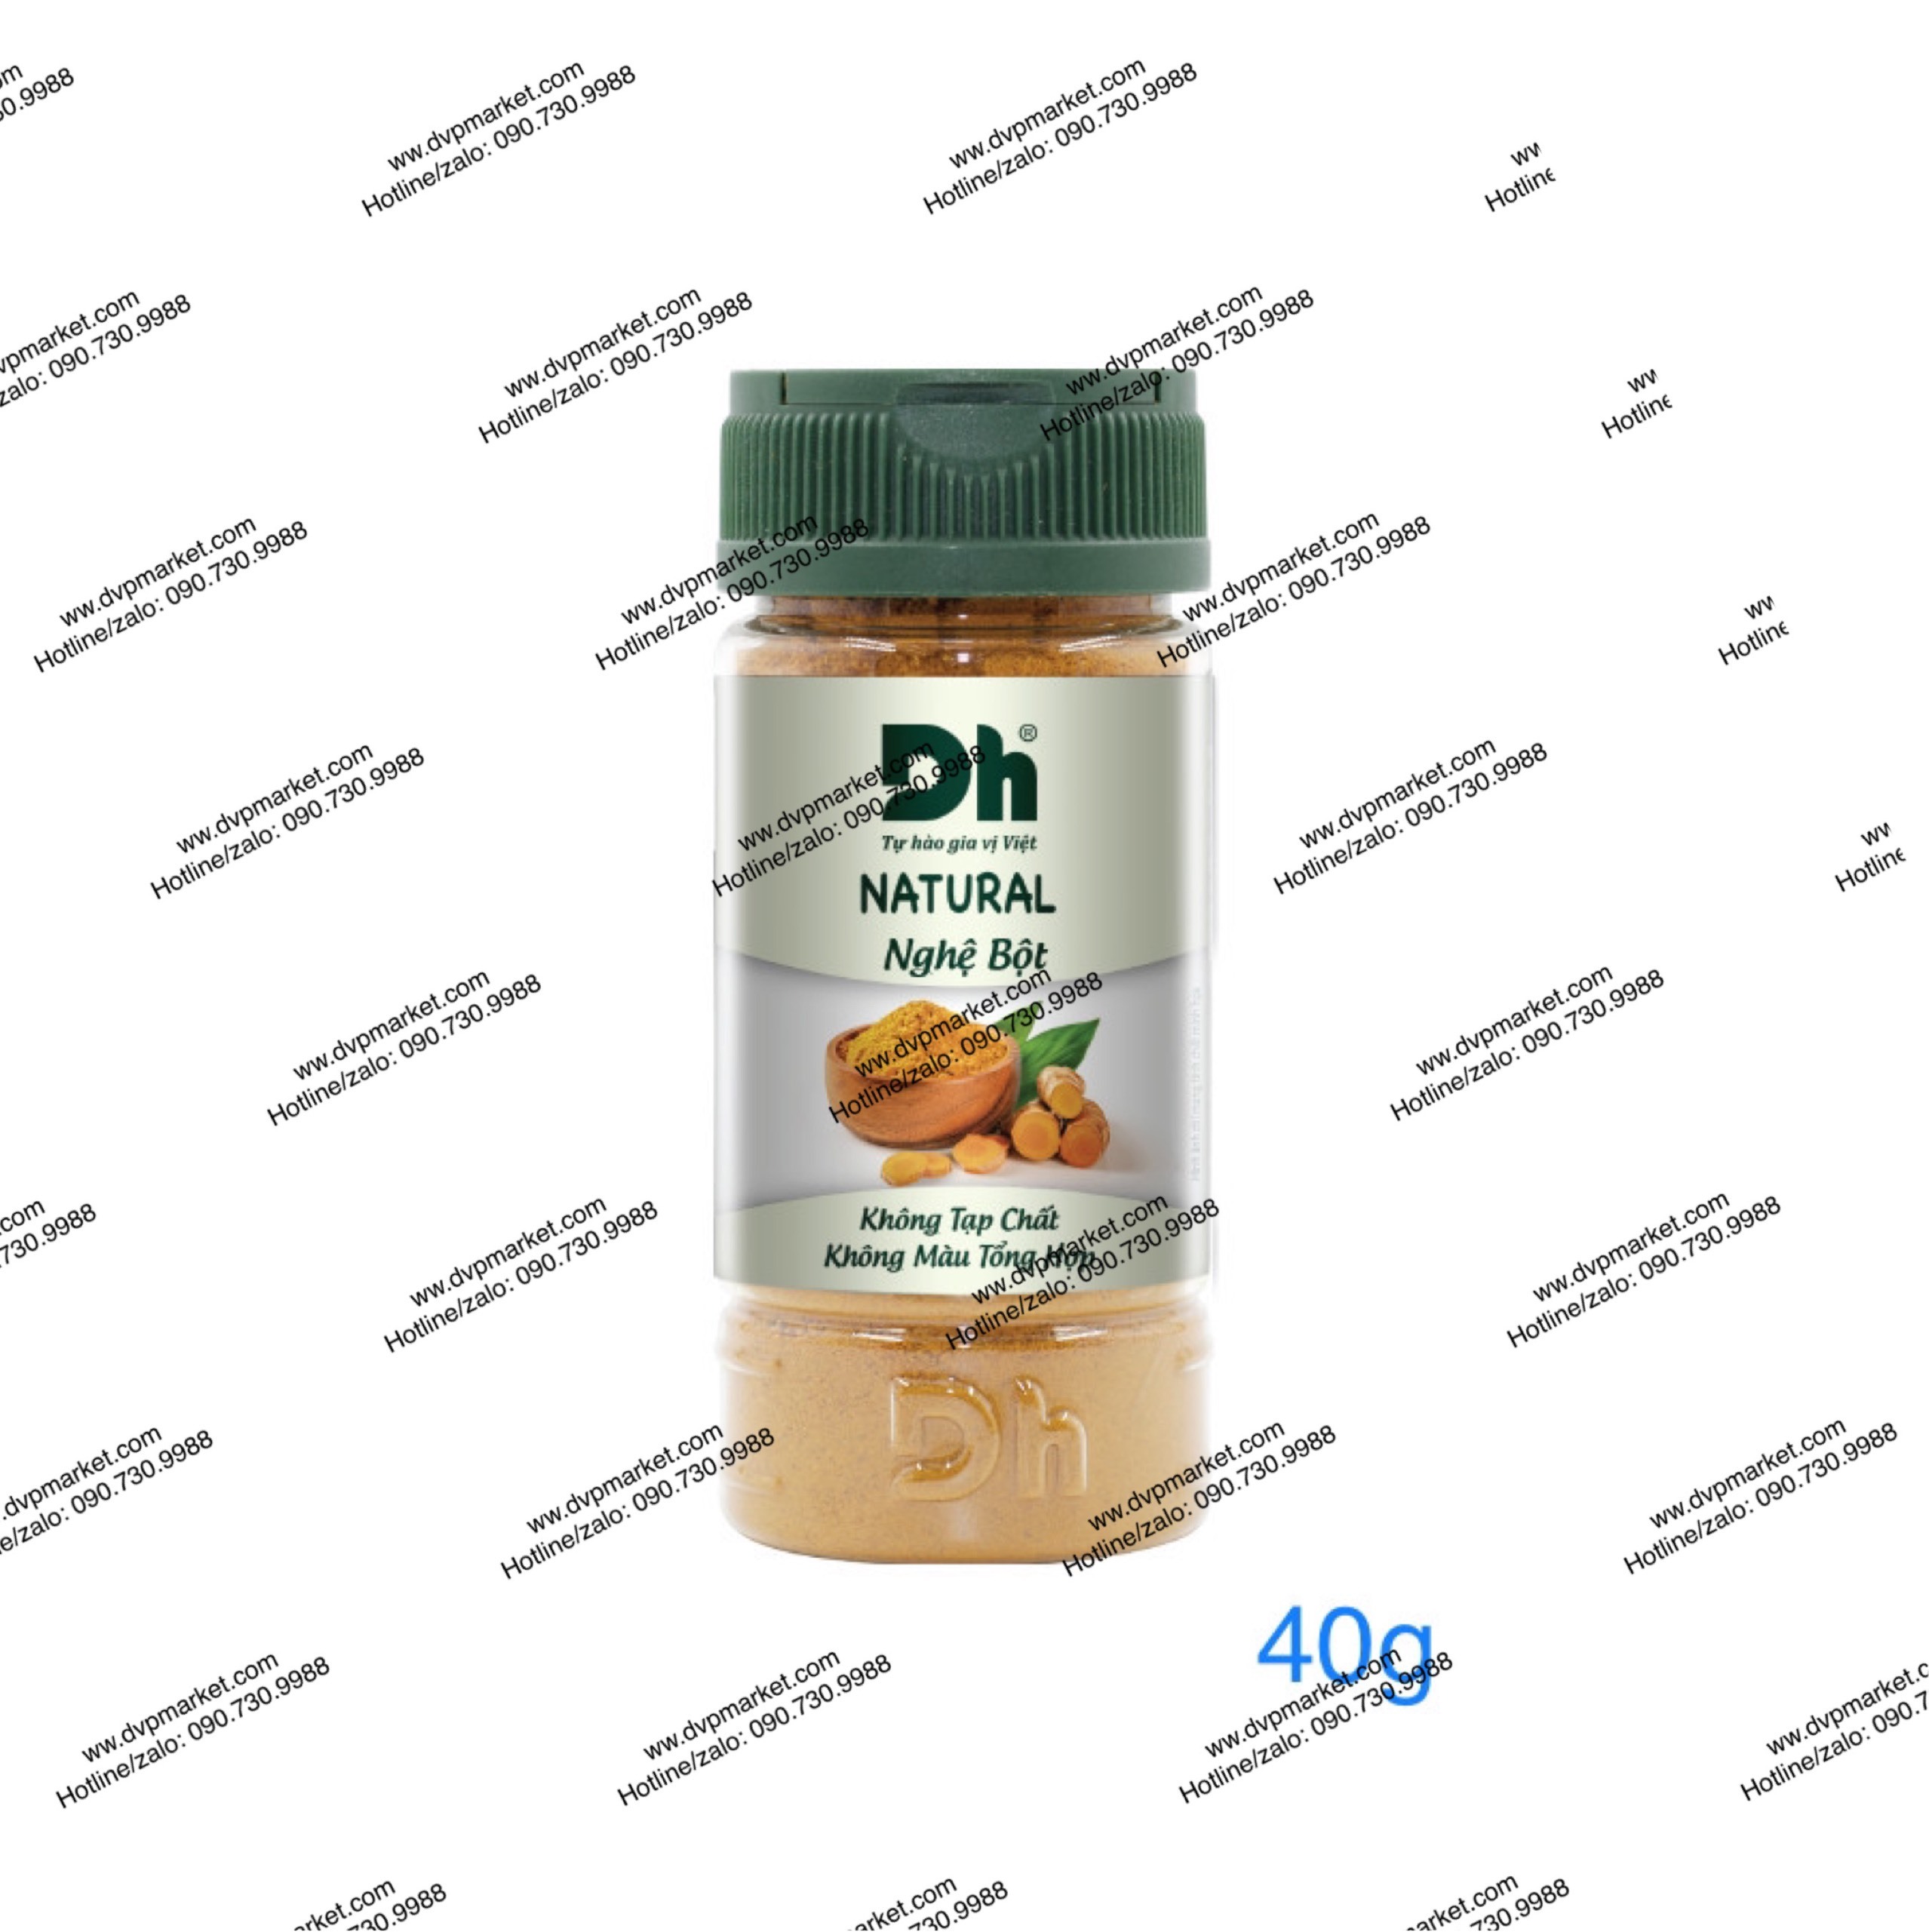 Nghệ bột Dh Foods Natural hũ 40g